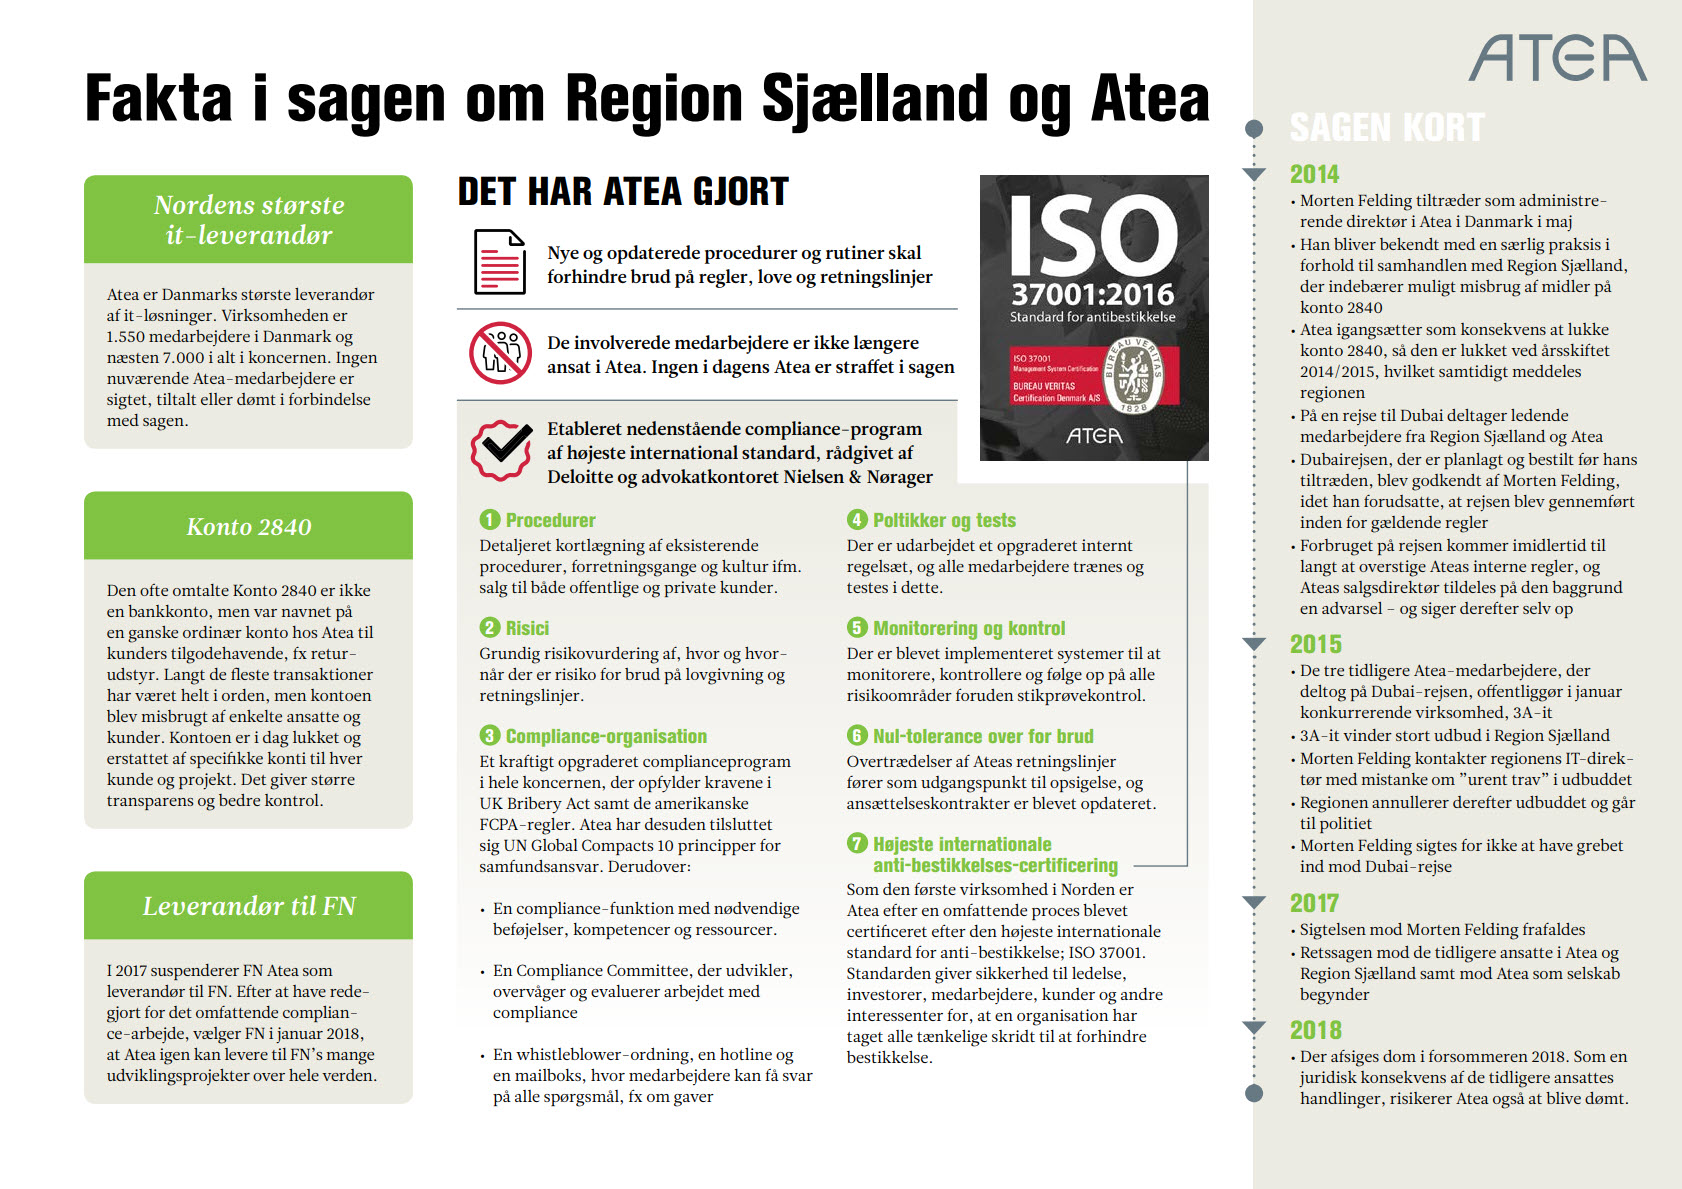 Fakta i sagen om Region Sjælland og Atea